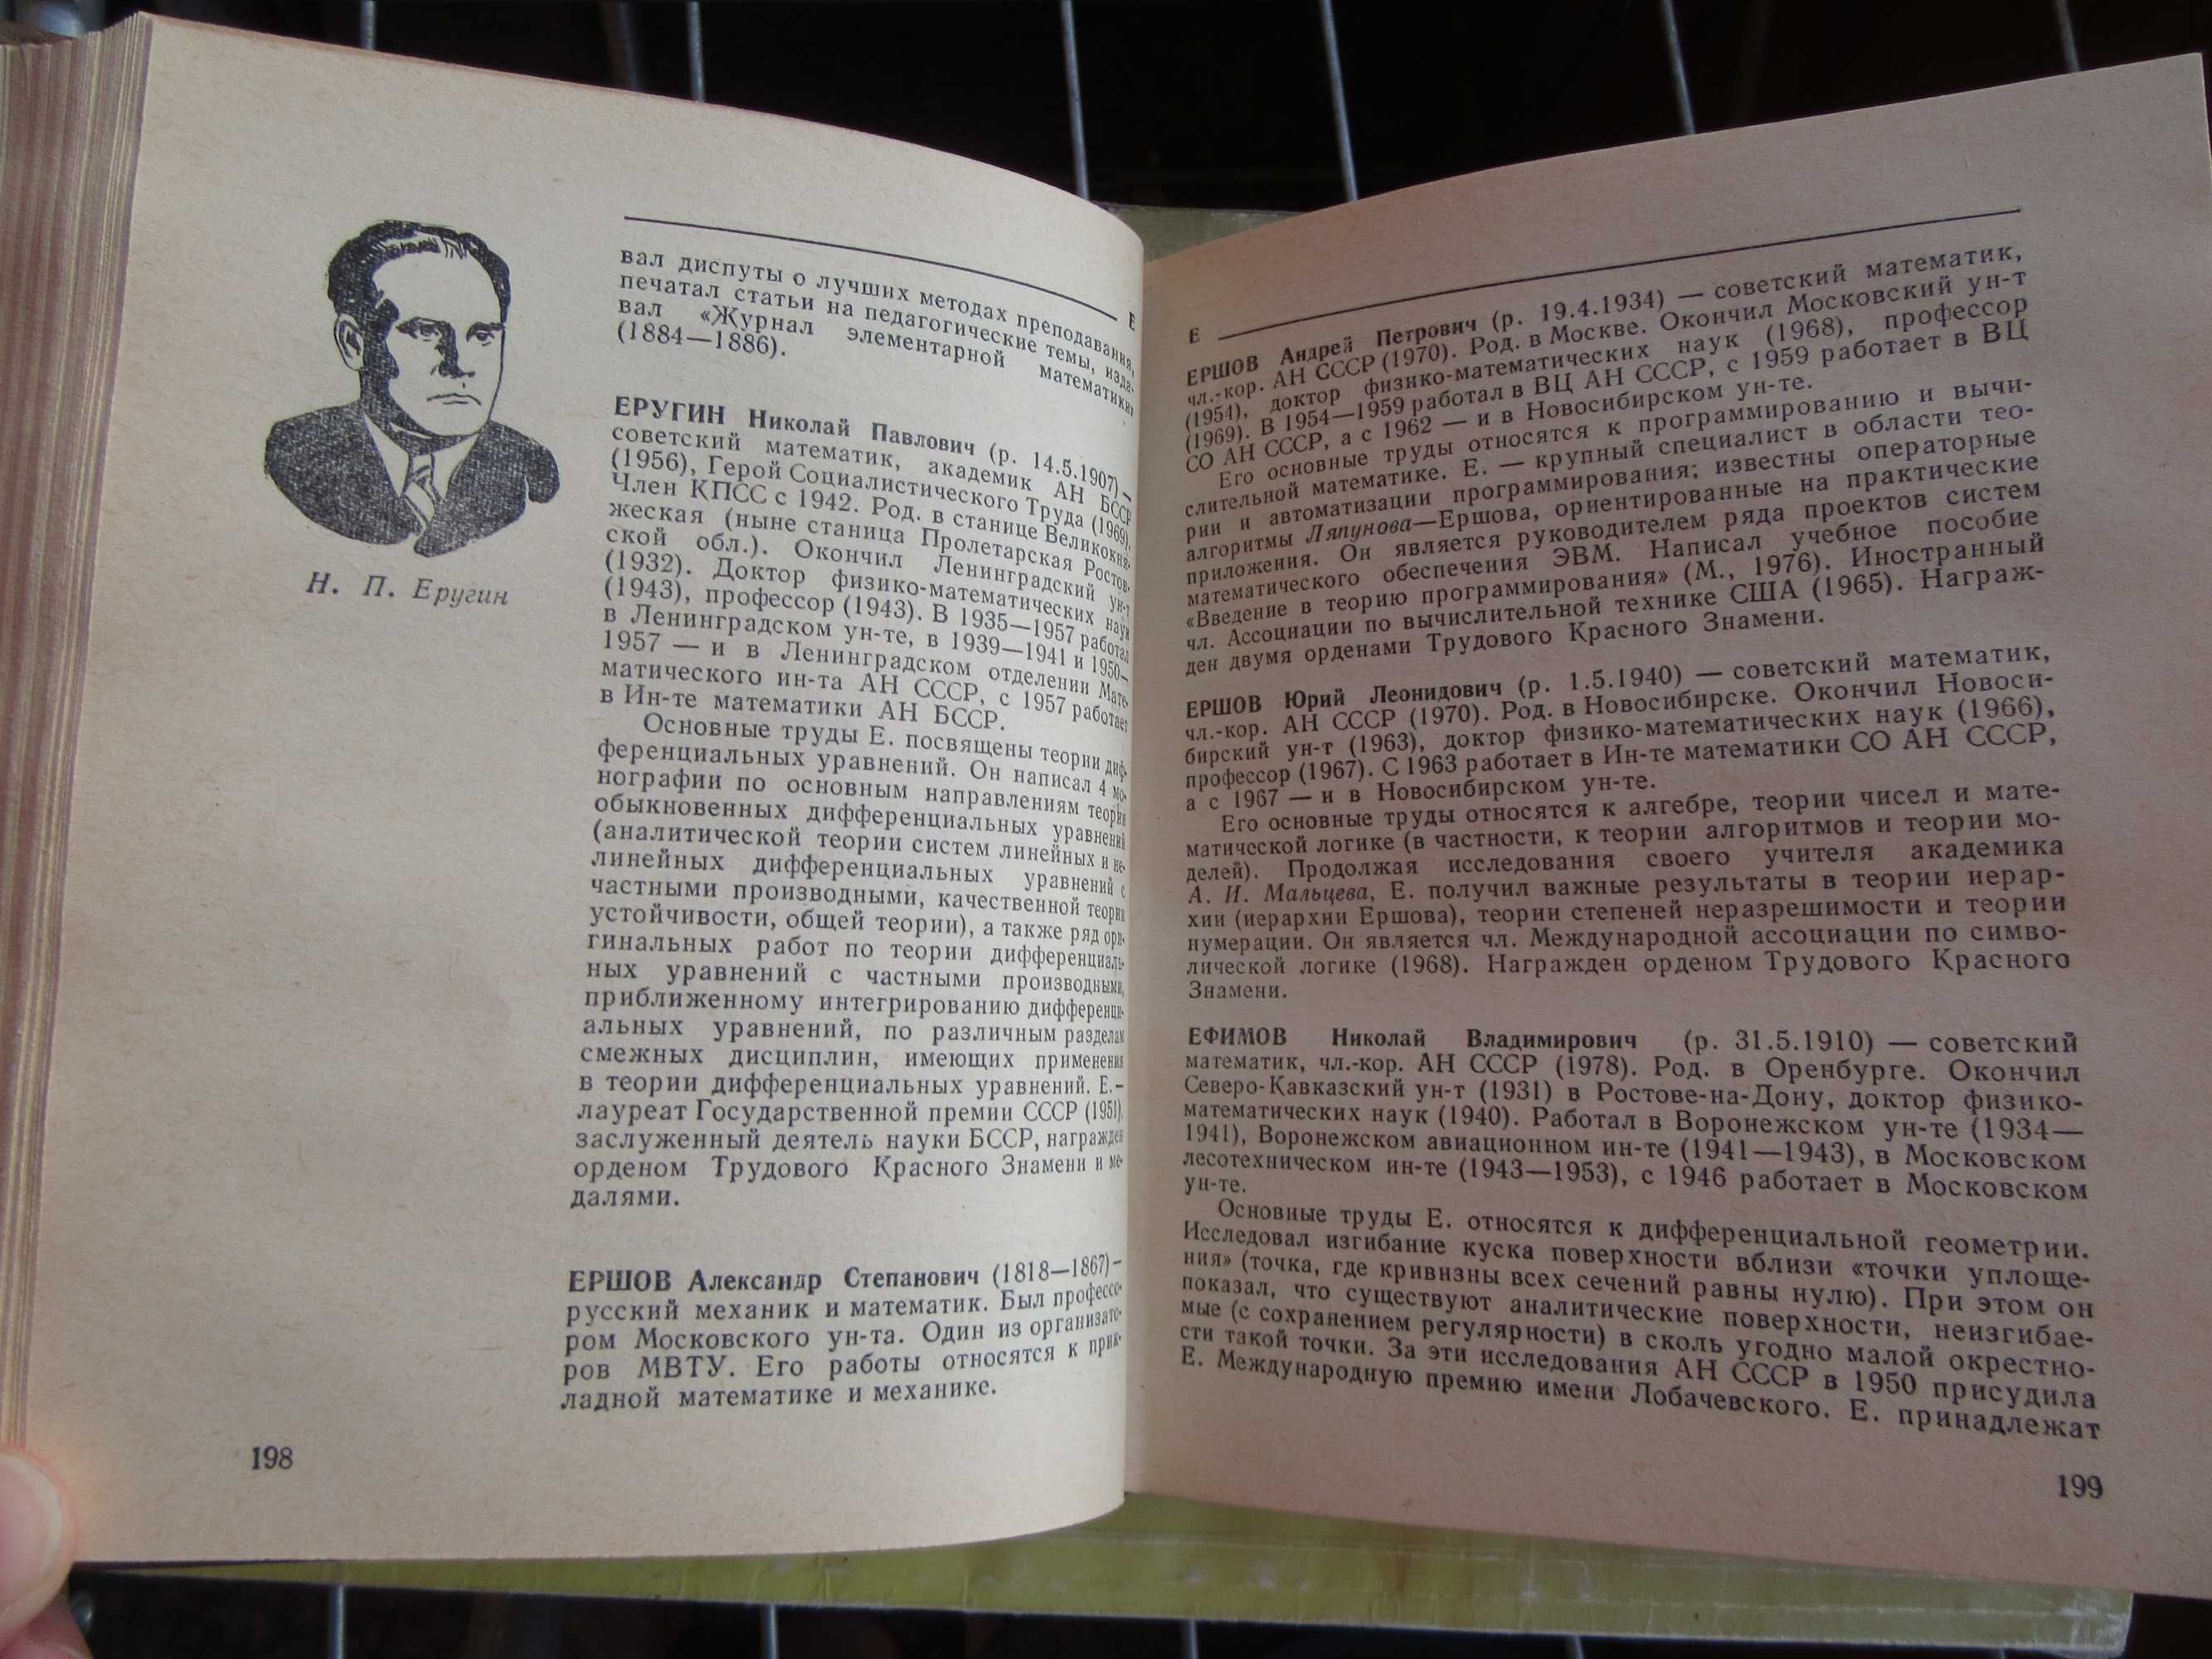 Биографический словарь деятелей в области математики.Бородин А.И.,1979